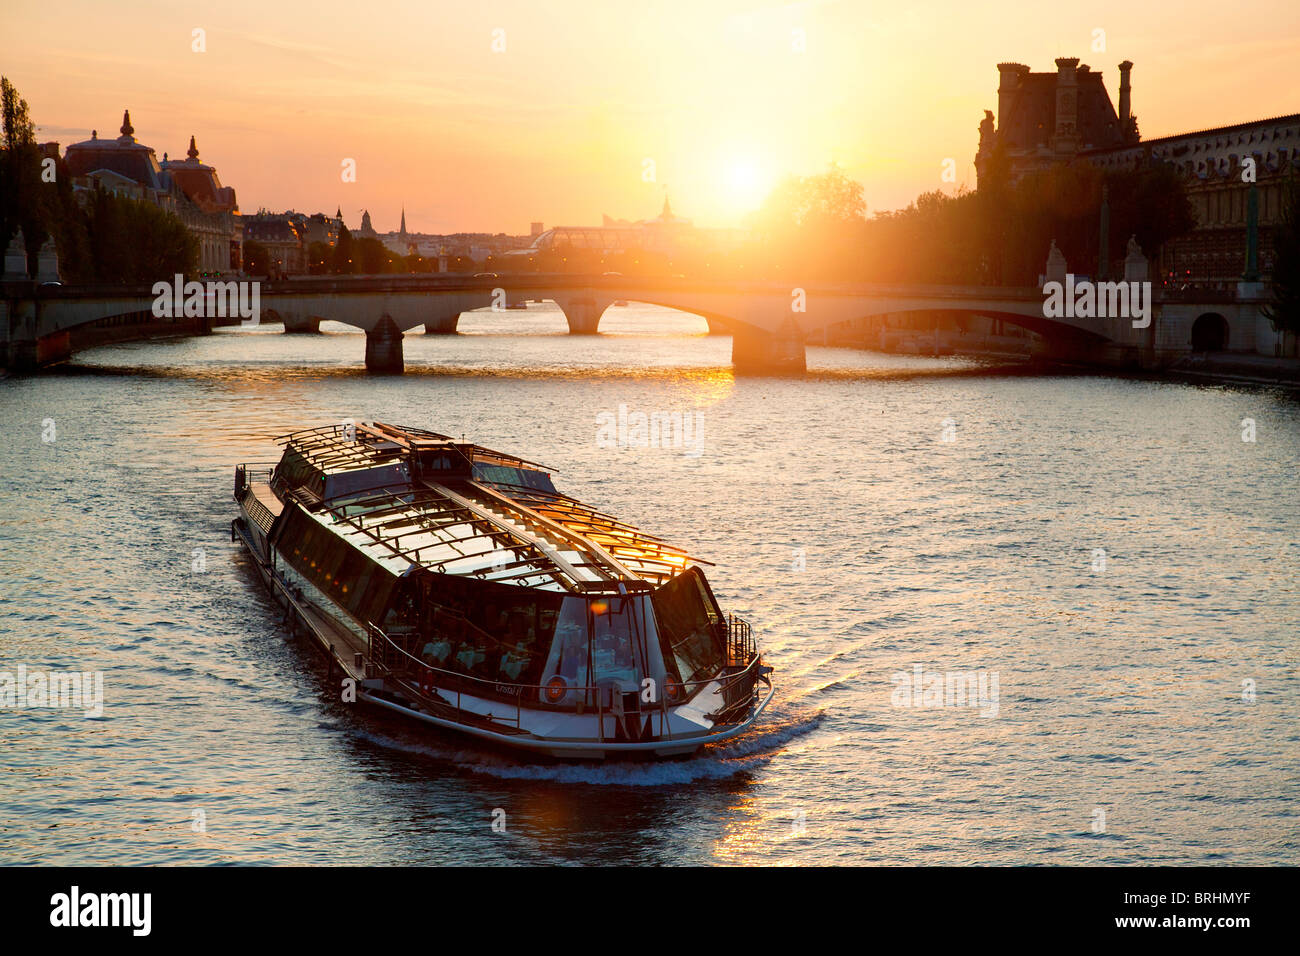 Europa, Francia, Parigi, la barca turistica sul fiume Senna al tramonto Foto Stock